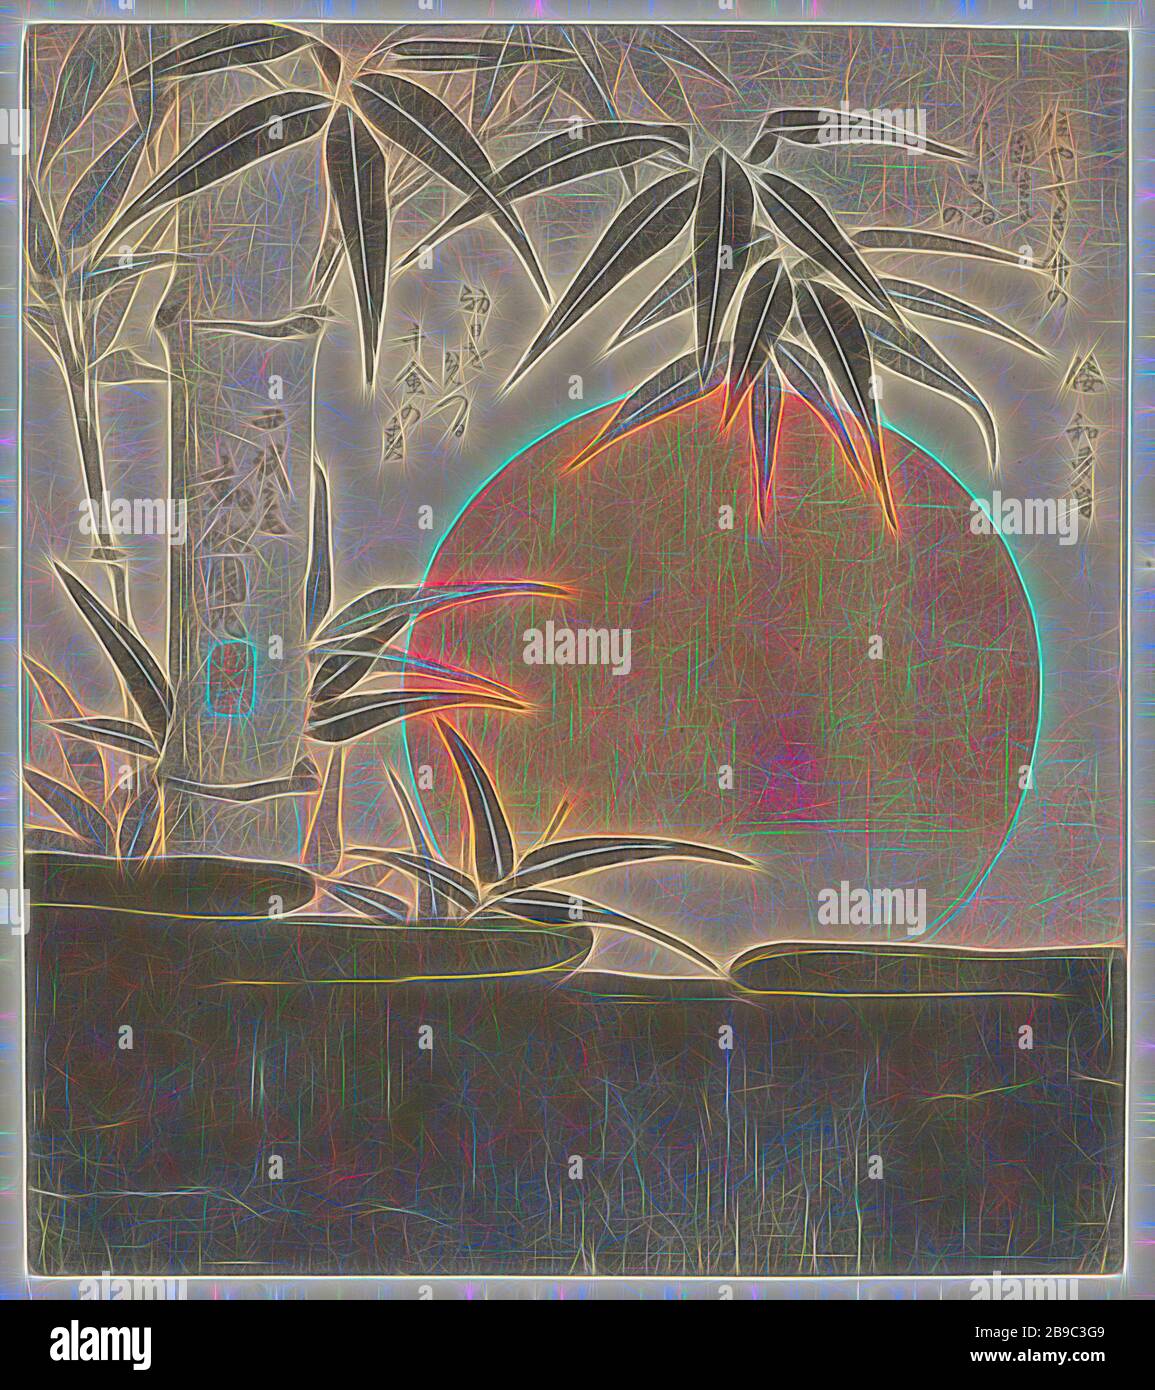 Bambou et soleil levant le soleil et le bambou, UN grand soleil rouge se lève derrière un nuage doré, le premier lever de soleil de l'année. Avec un poème, lever de soleil, Utagawa Kunimaru (mentionné sur l'objet), Japon, 1829, papier, gravure de couleur, h 209 mm × W 186 mm, repensée par Gibon, conception de glanissement chaleureux et gai de la luminosité et des rayons de lumière radiance. L'art classique réinventé avec une touche moderne. La photographie inspirée du futurisme, qui embrasse l'énergie dynamique de la technologie moderne, du mouvement, de la vitesse et révolutionne la culture. Banque D'Images